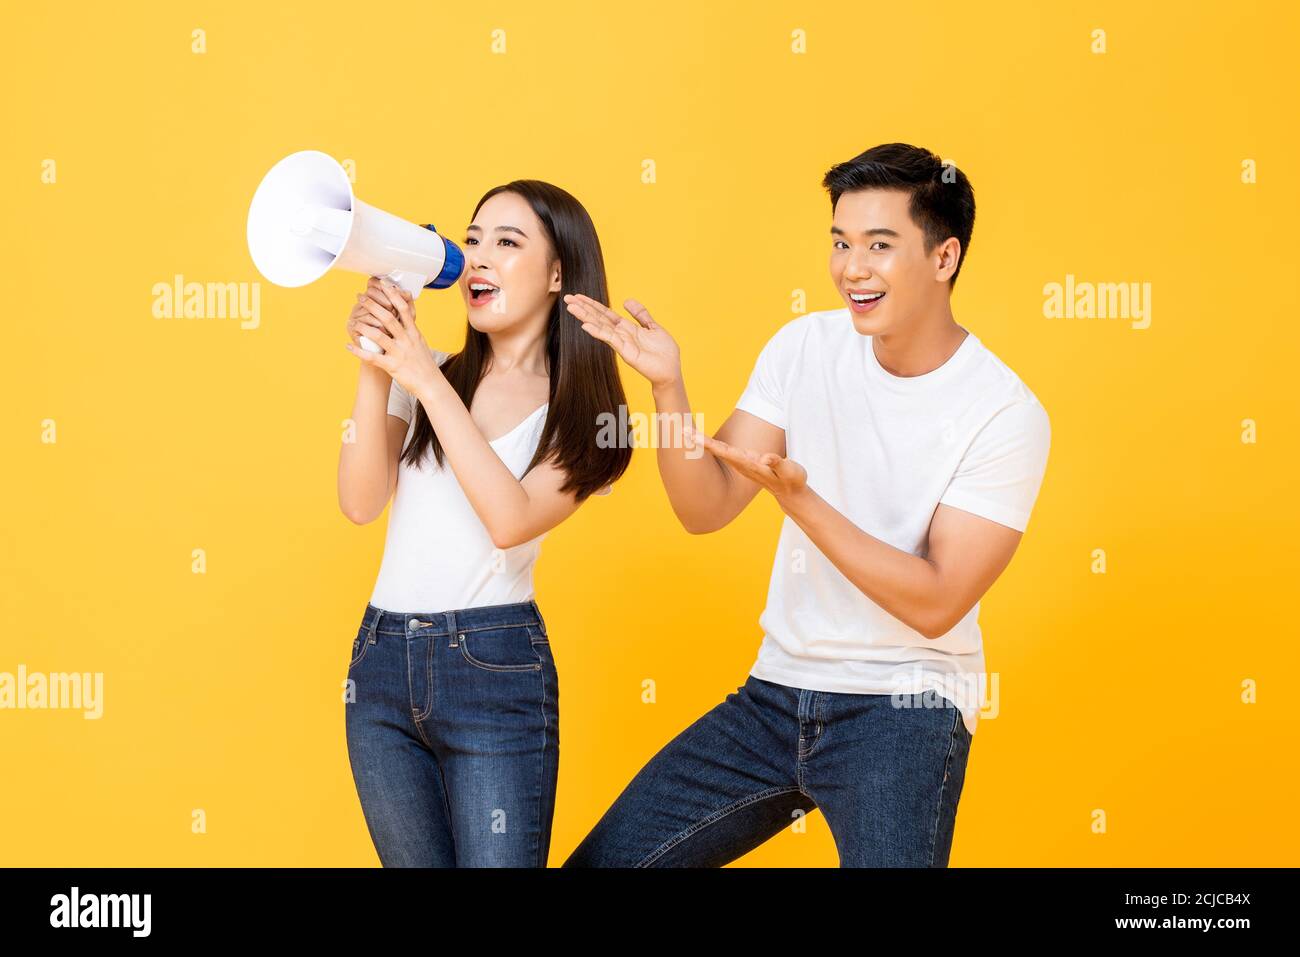 Fröhliches Porträt von lächelnd glücklich junge asiatische Paar, die Ankündigung Und präsentieren in isolierten Studio gelben Hintergrund Stockfoto